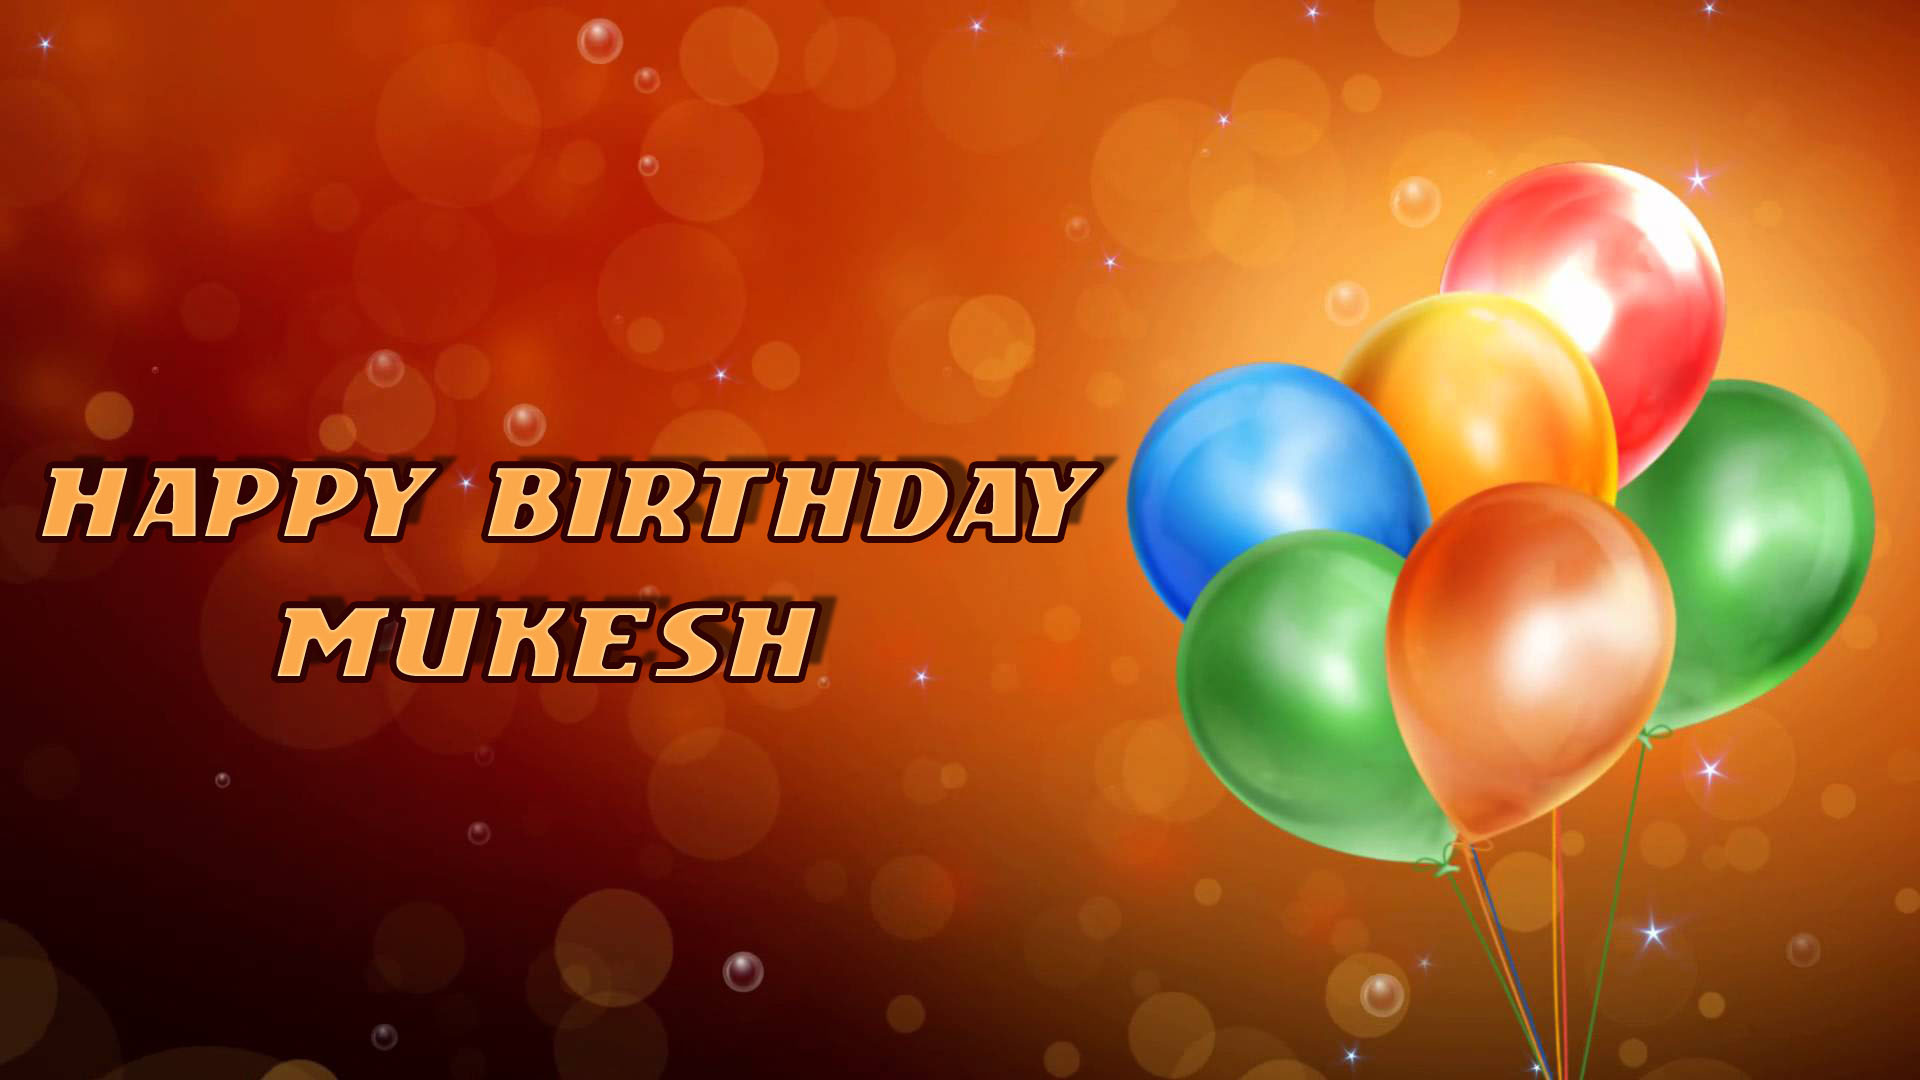 Happy Birthday Mukesh image